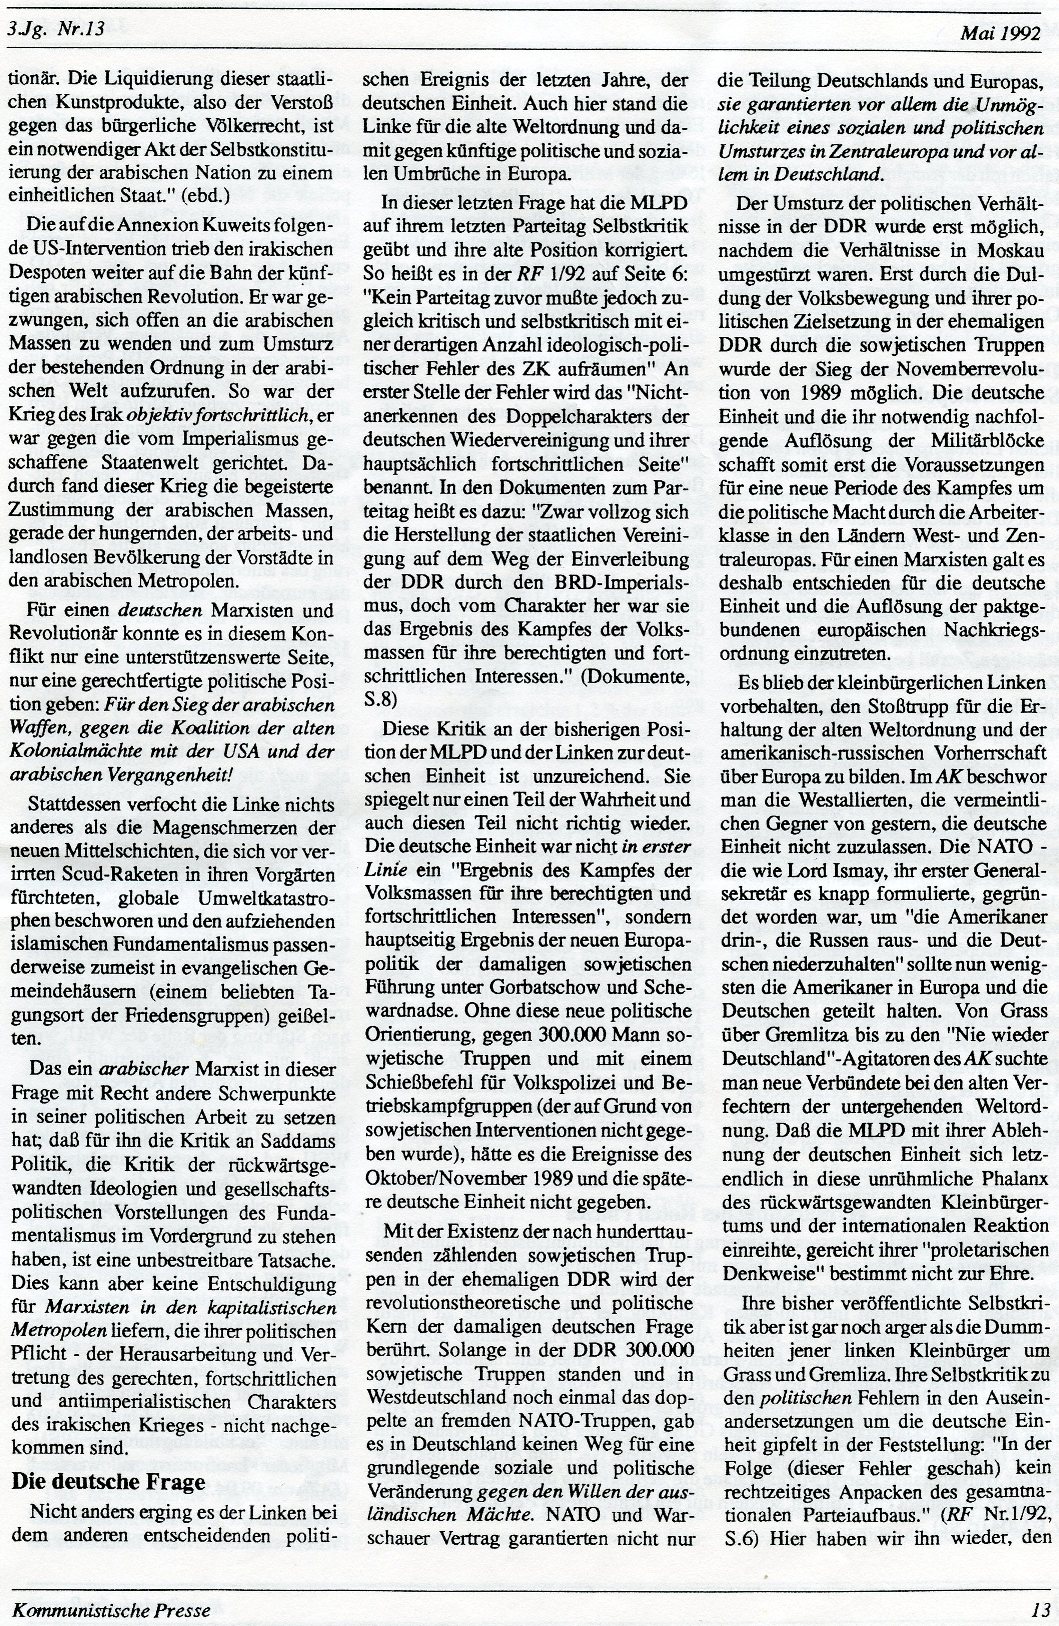 Gelsenkirchen_Kommunistische_Presse_1992_13_013